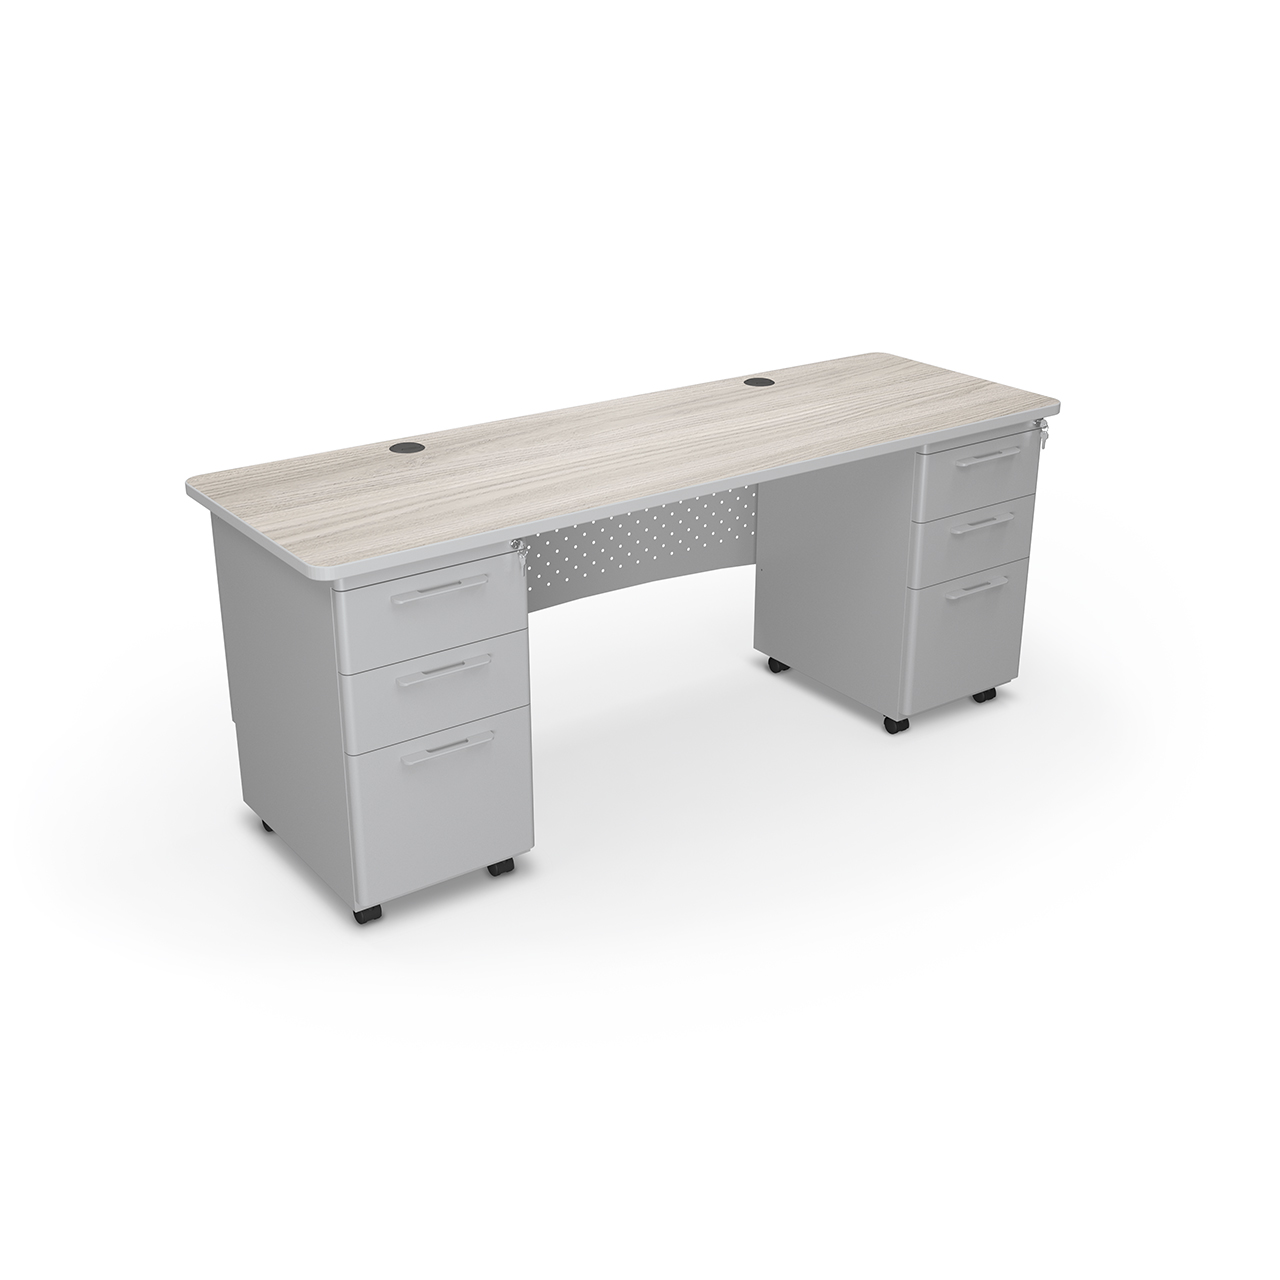 https://library.moorecoinc.com/images/v1657903504/wpe-uploads/Avid-Modular-Desk-91781-72x24-Double-Pedestal-Desk-Front/Avid-Modular-Desk-91781-72x24-Double-Pedestal-Desk-Front.jpg